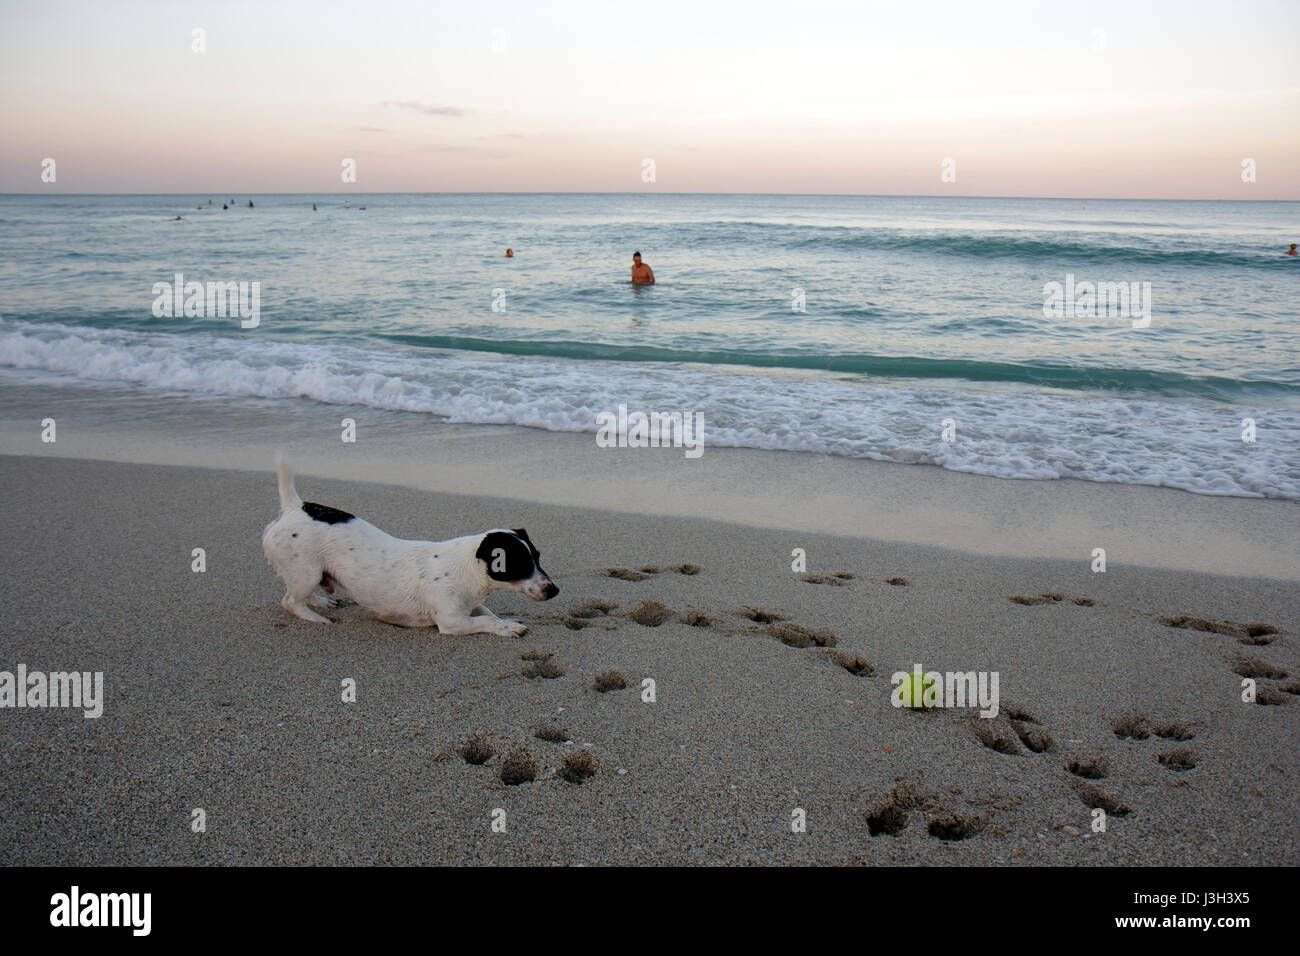 Miami Beach Florida,Océano Atlántico,agua,costa,playa pública,arena,costa,mar,perro,bola,mascota,jugar,estampado de pata,Jack Russell terrier,surf,FL080911025 Foto de stock